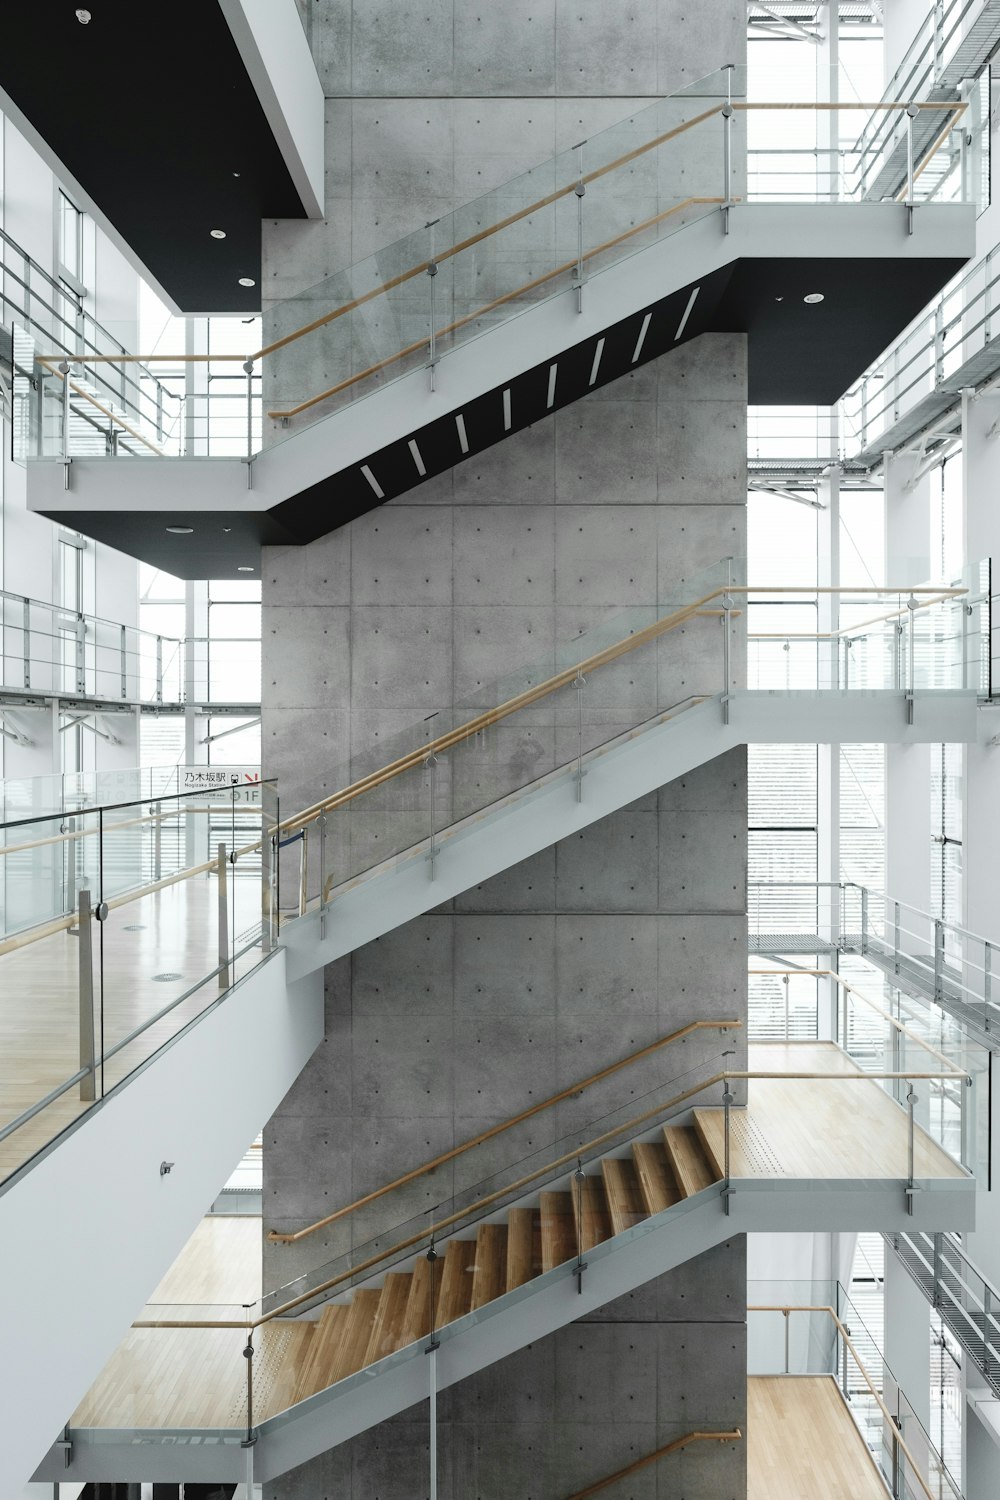 fotografia architettonica dell'edificio con le scale